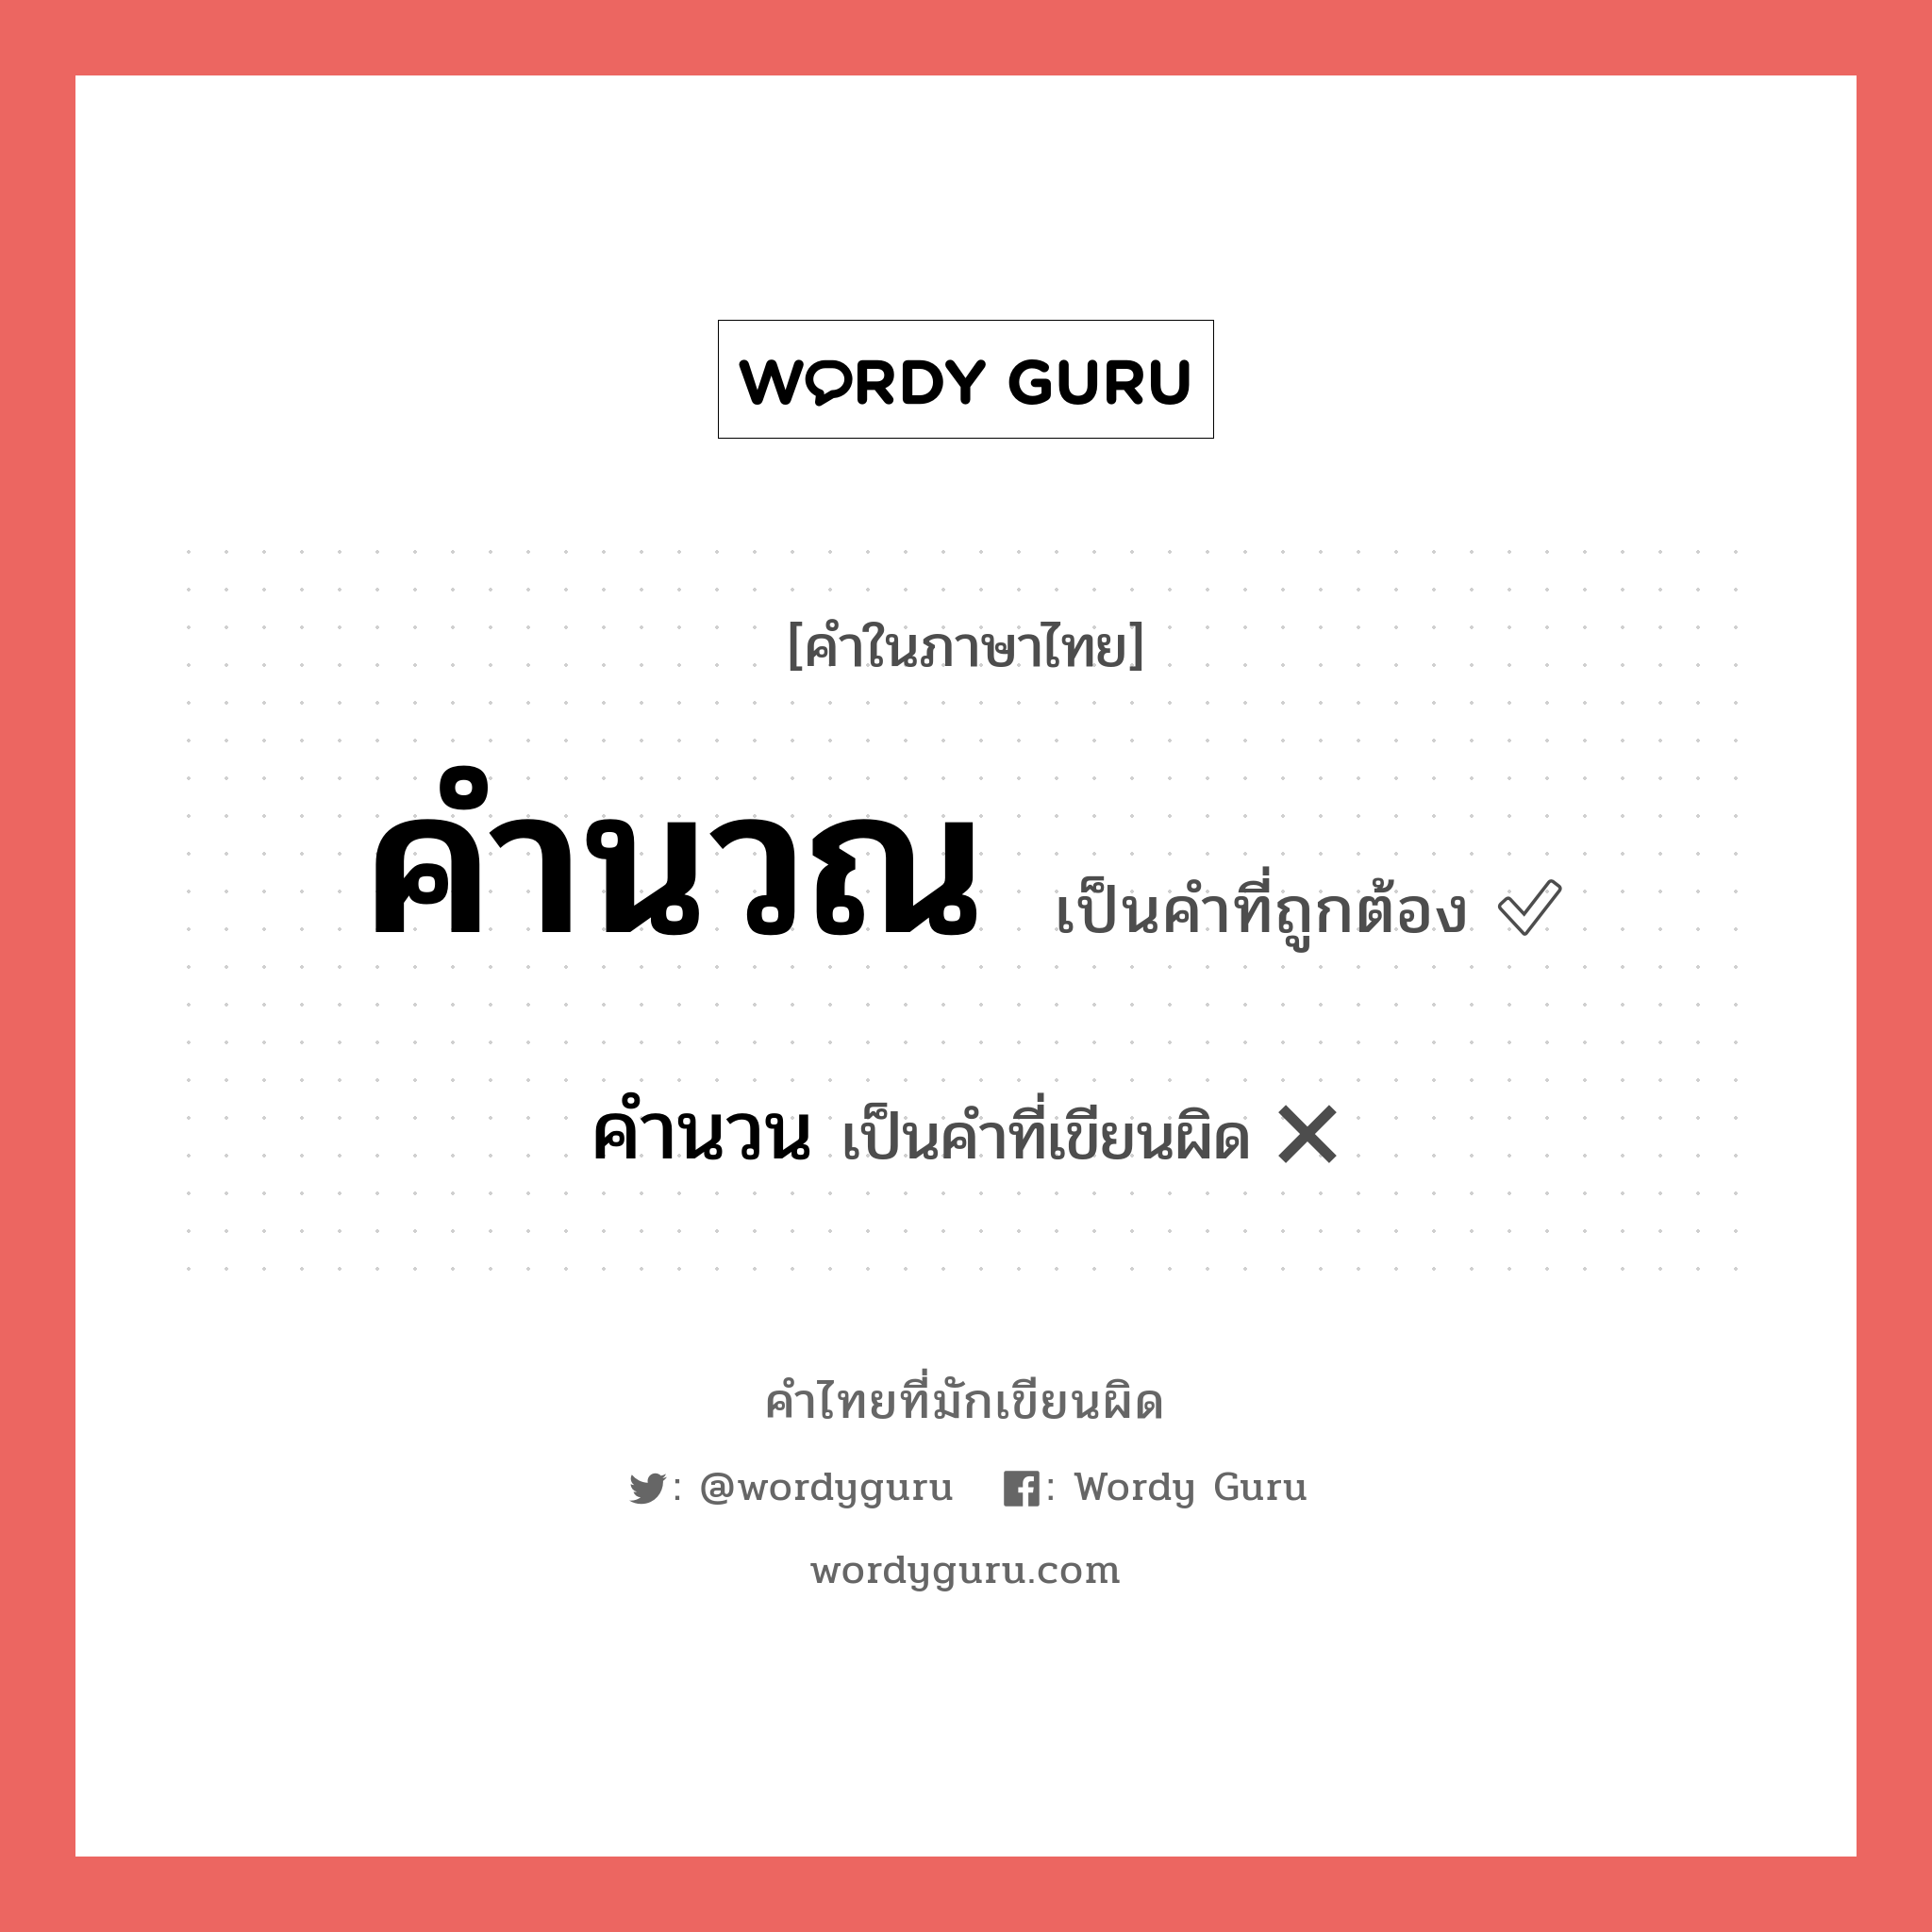 คำนวณ หรือ คำนวน คำไหนเขียนถูก?, คำในภาษาไทยที่มักเขียนผิด คำนวณ คำที่ผิด ❌ คำนวน